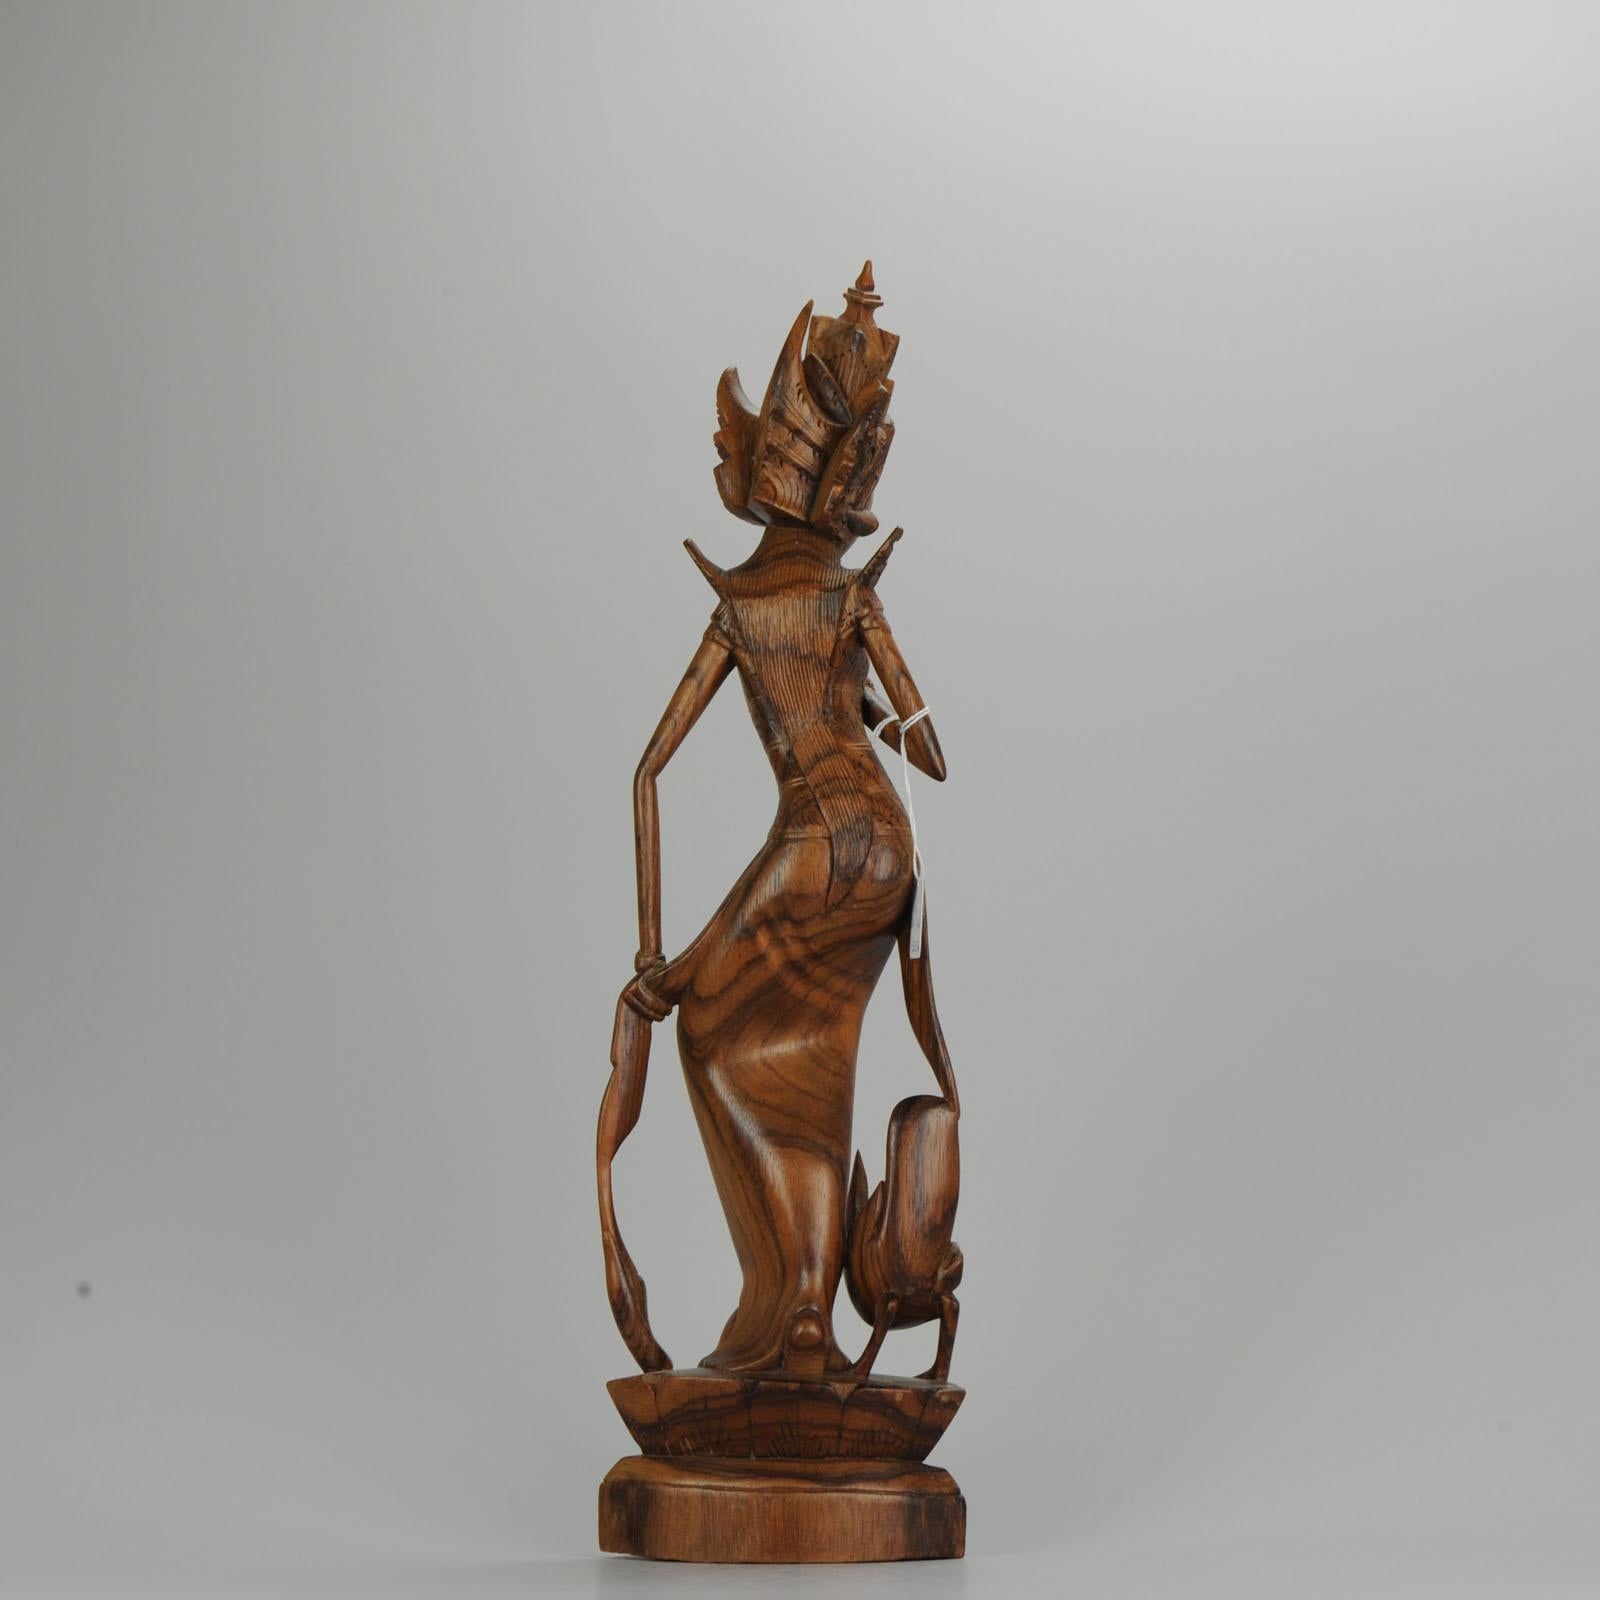 Porcelaine Statue de femme sculptée en bois balinaise Art Déco du milieu du 20e siècle - Bali